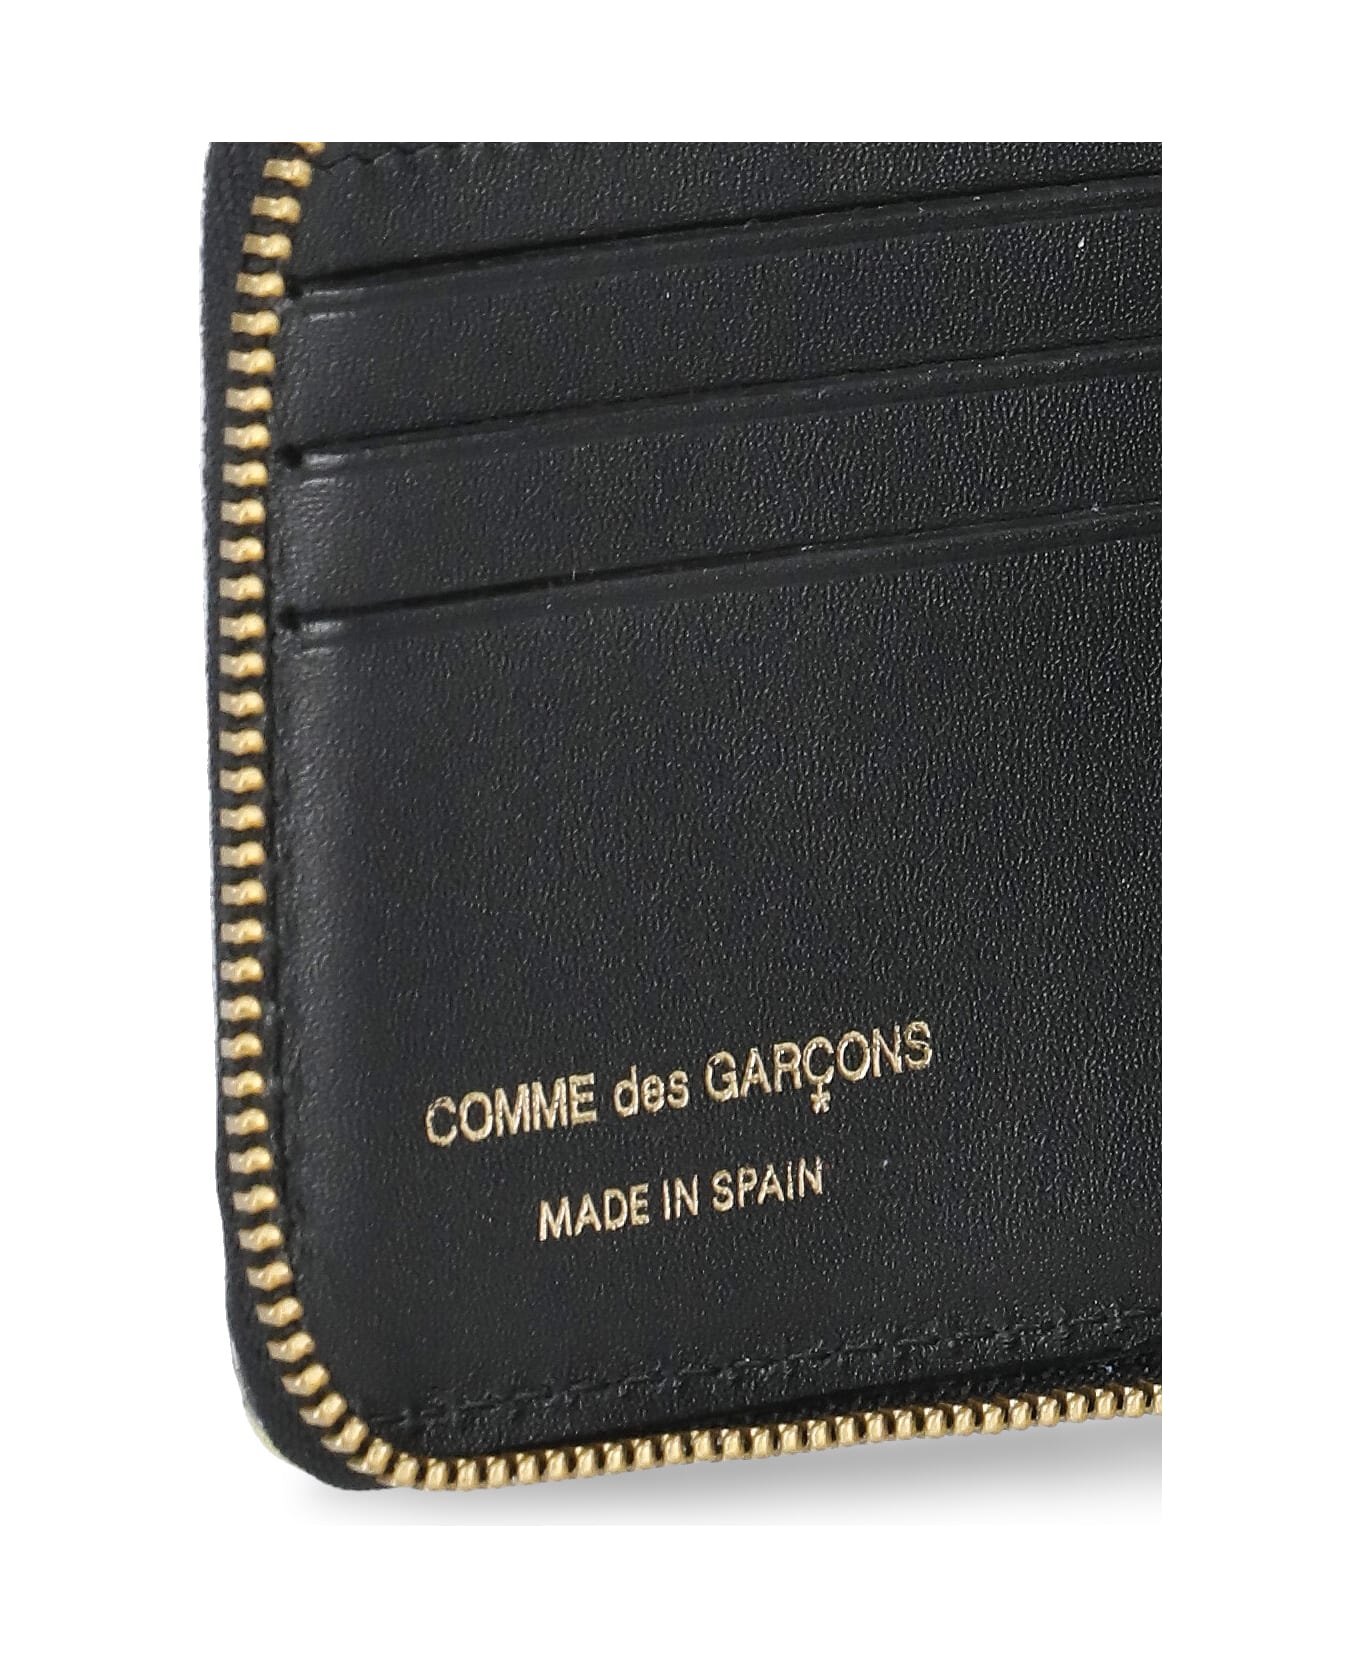 Comme des Garçons Wallet Wallet With A Tartan Pattern Wallet - YELLOW/GREEN